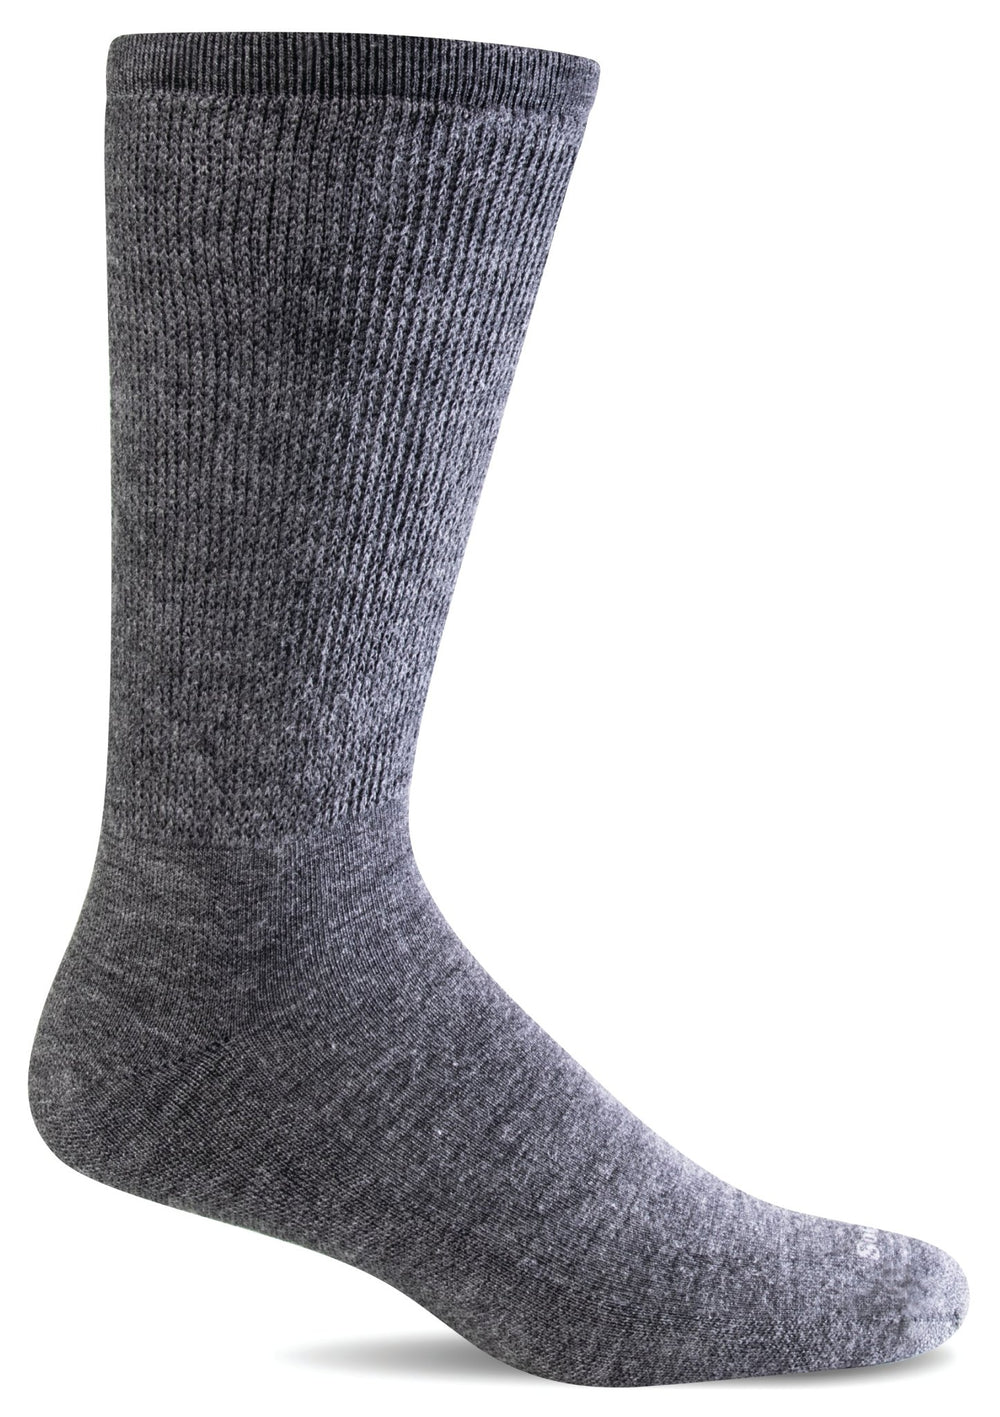 Sockwell Extra Easy Relaxed Fit Socks (Men's)